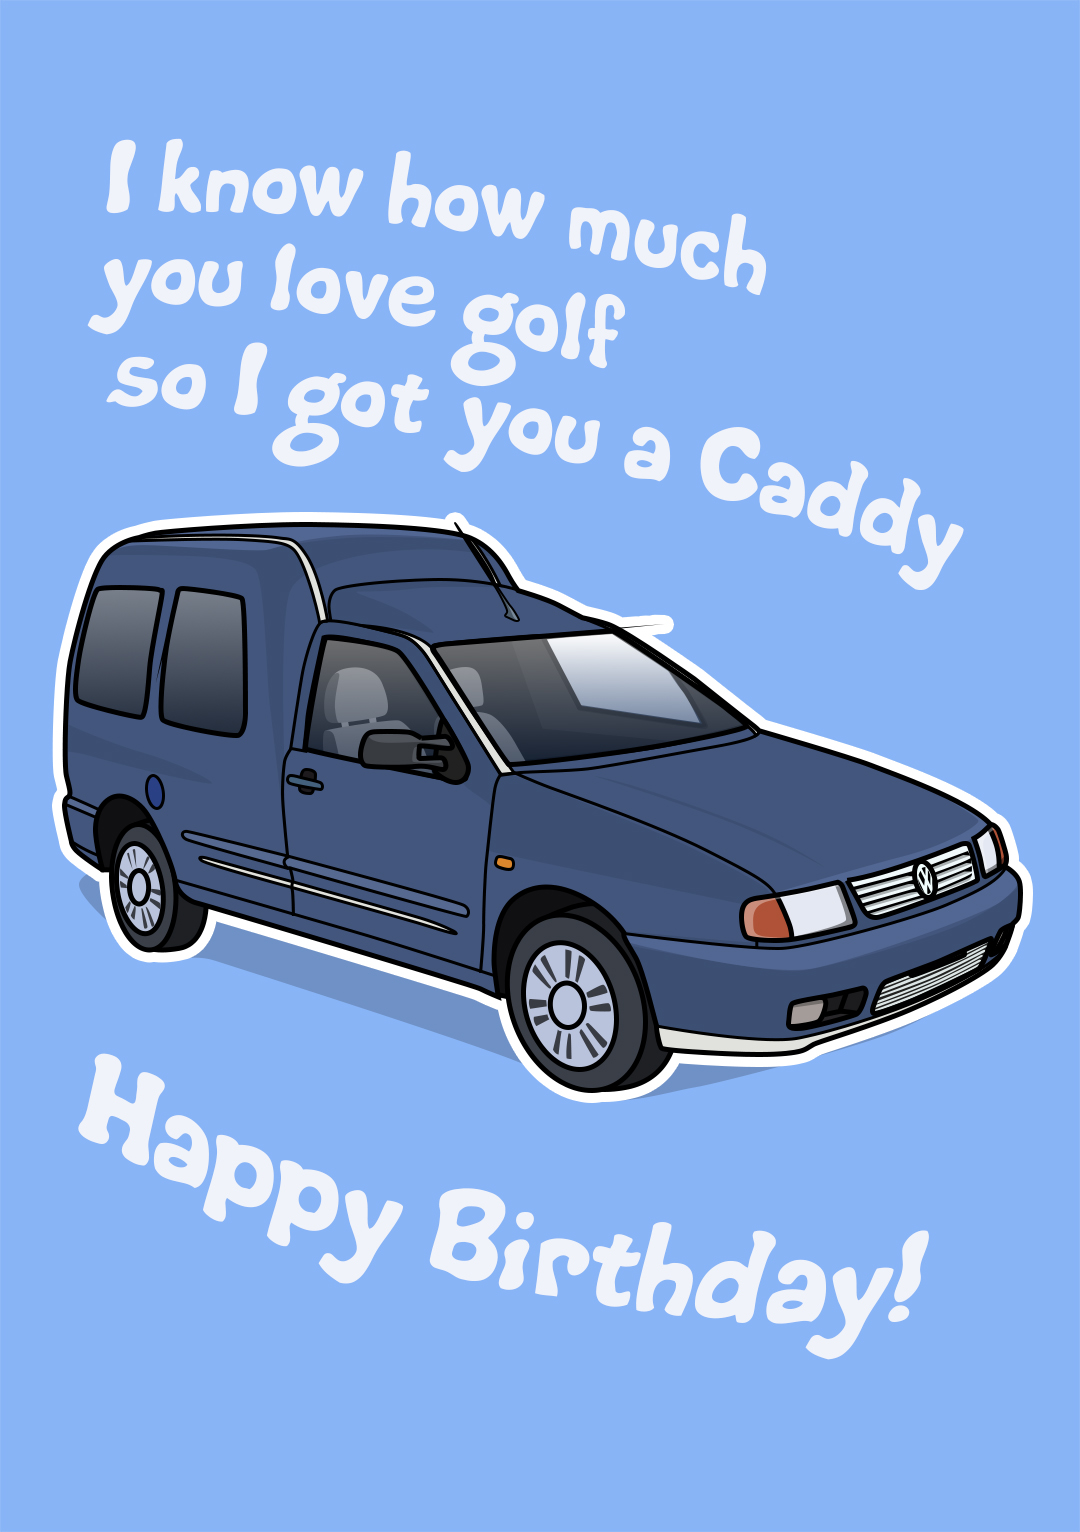 I Got You A Caddy...Happy Birthday!